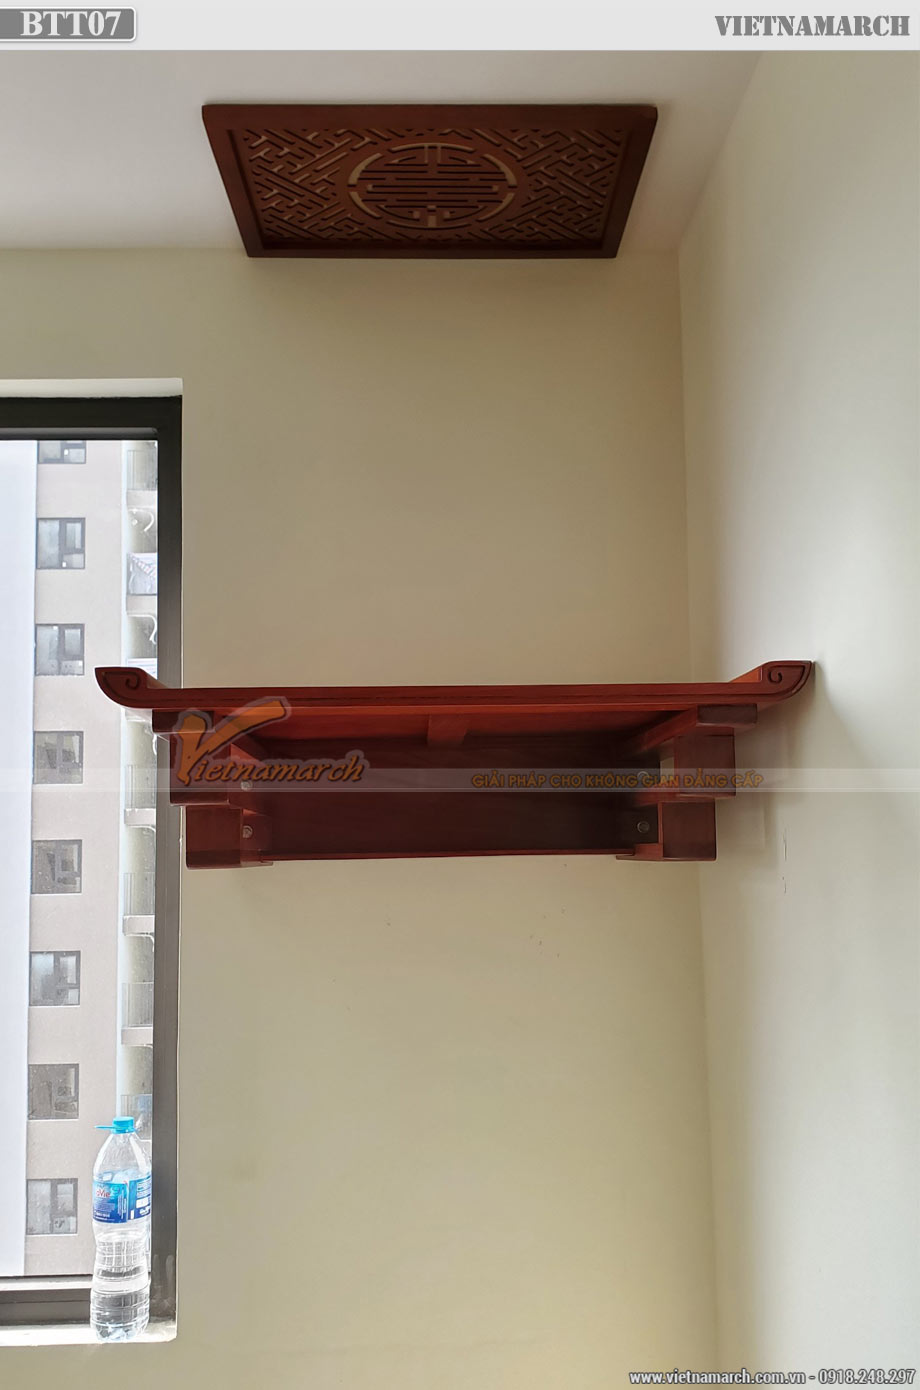 Bàn giao bàn thờ treo gỗ hương 59x97cm cho chung cư IEC Thanh Trì – BTT07 > Mẫu bàn thờ treo gỗ hương 59x97cm